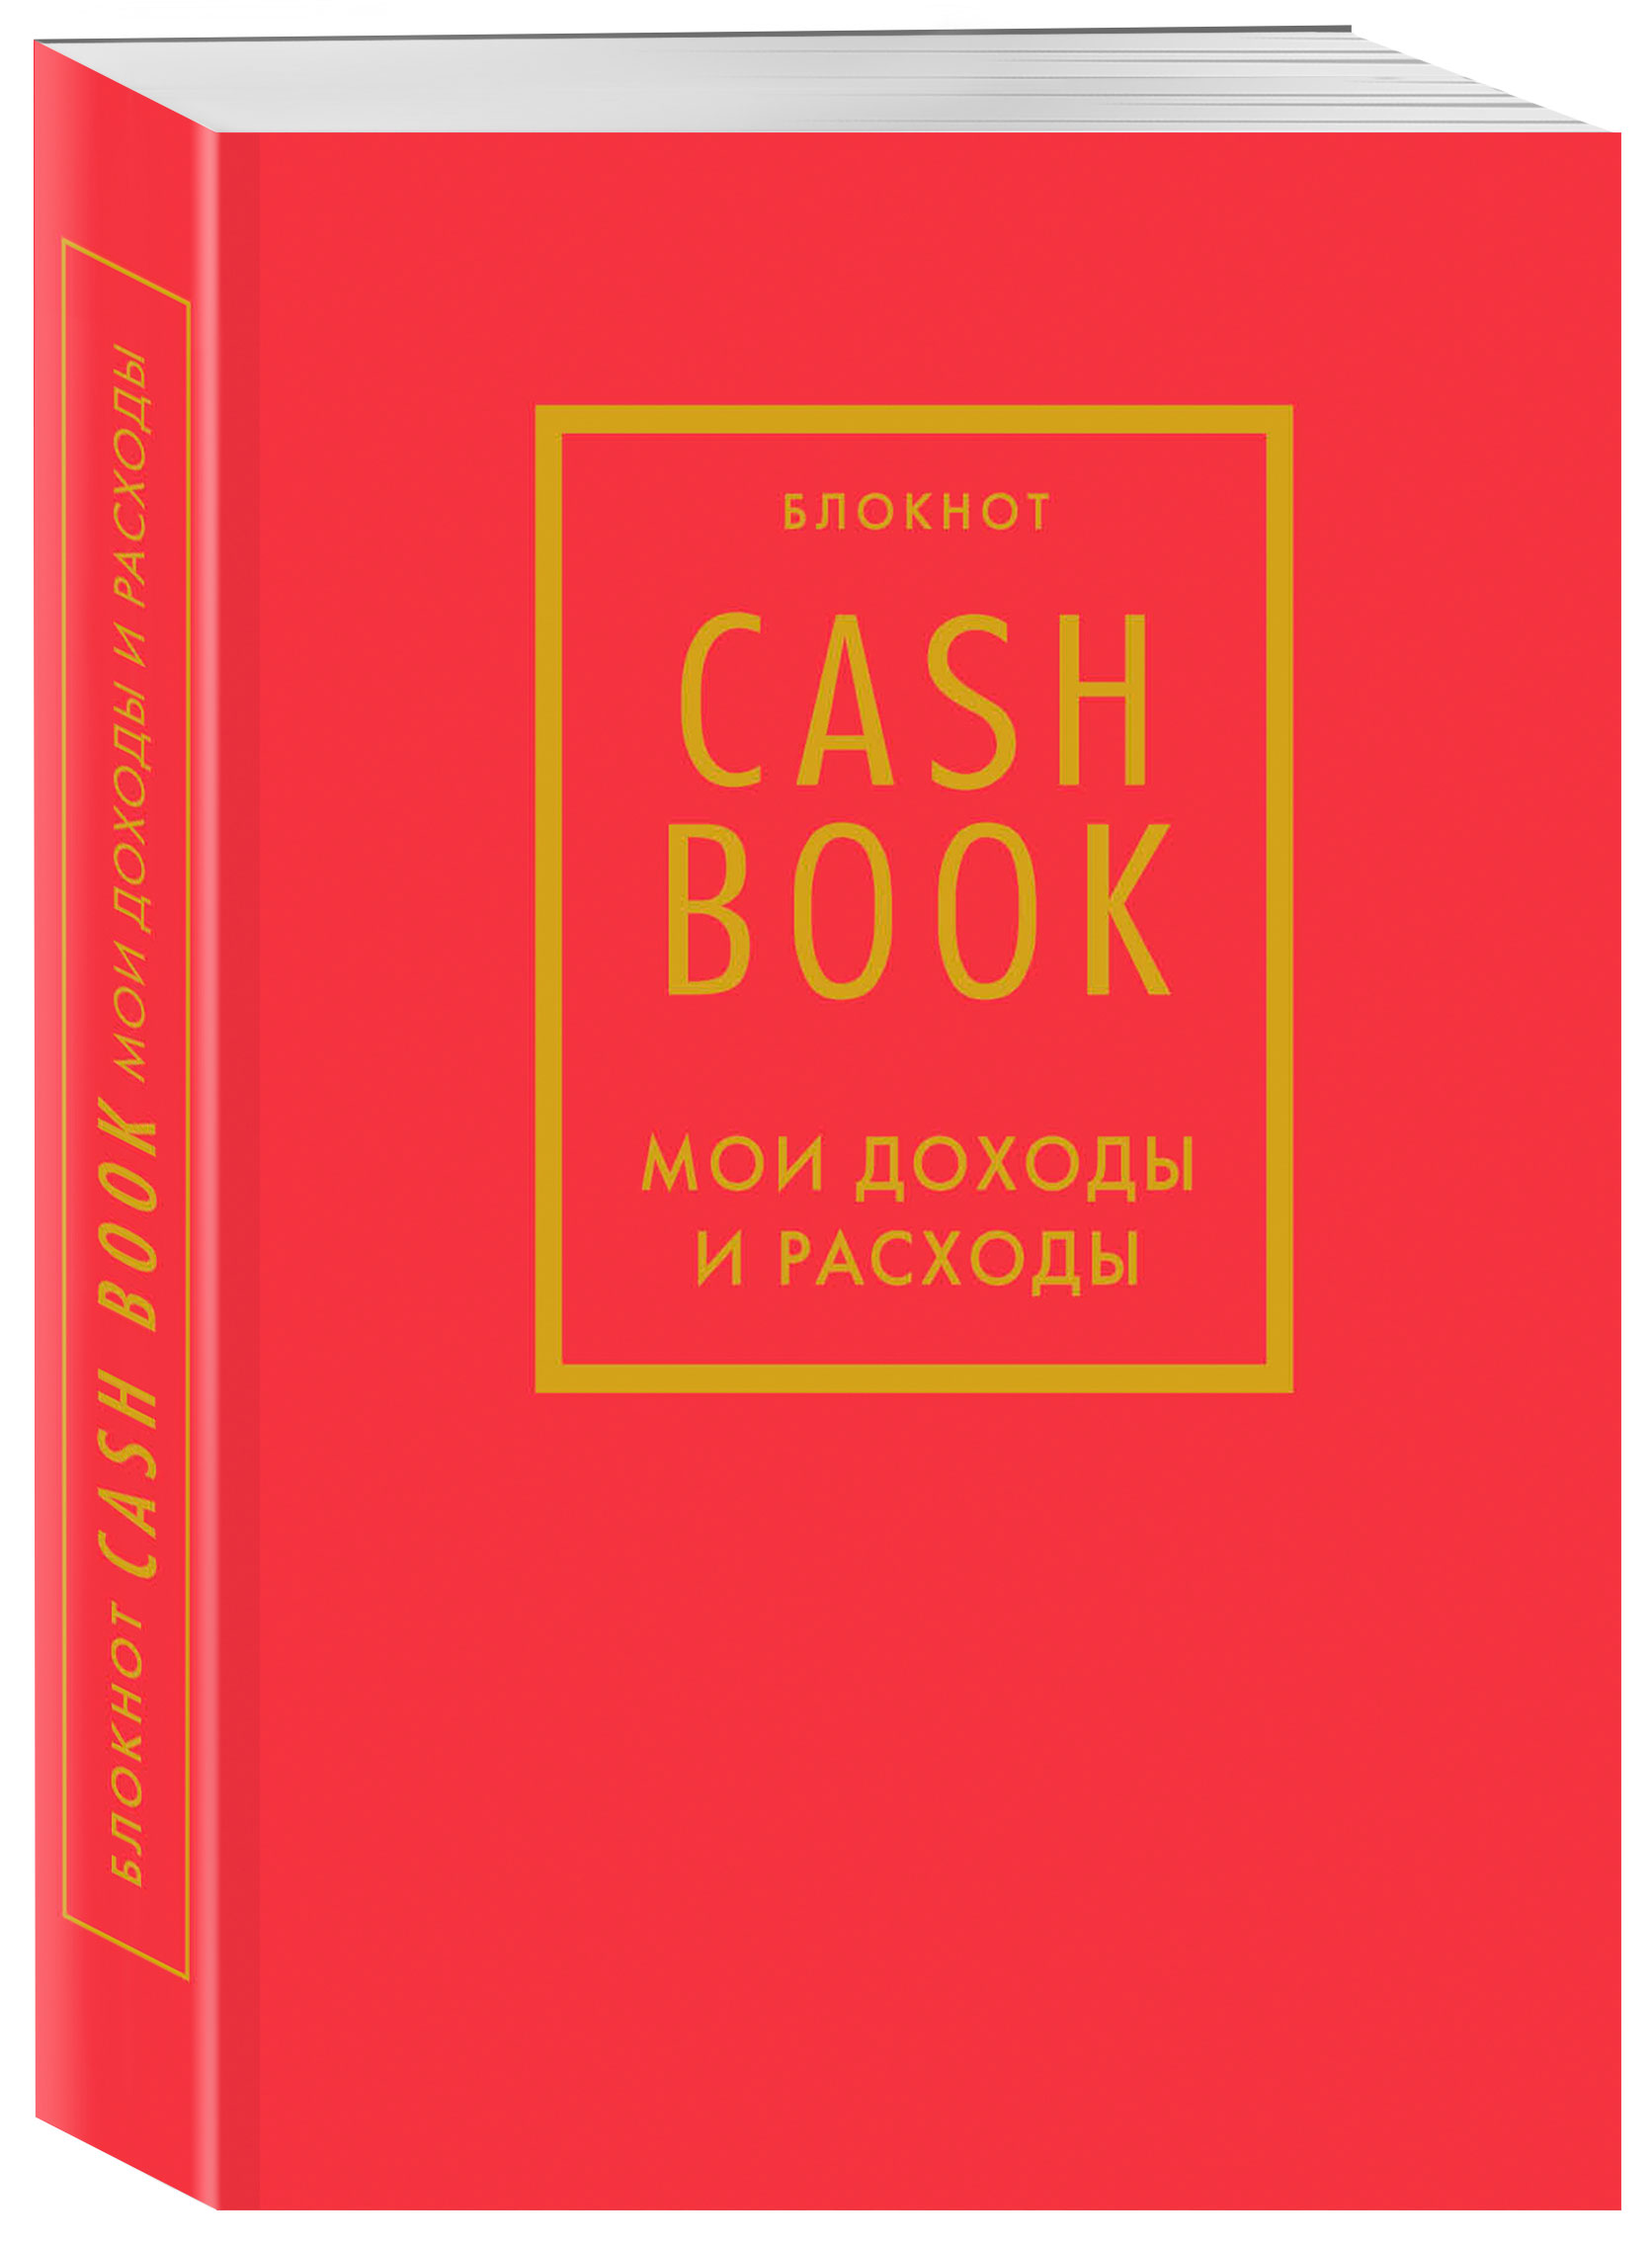 Блокнот CashBook Мои доходы и расходы (7-е издание / Красный)